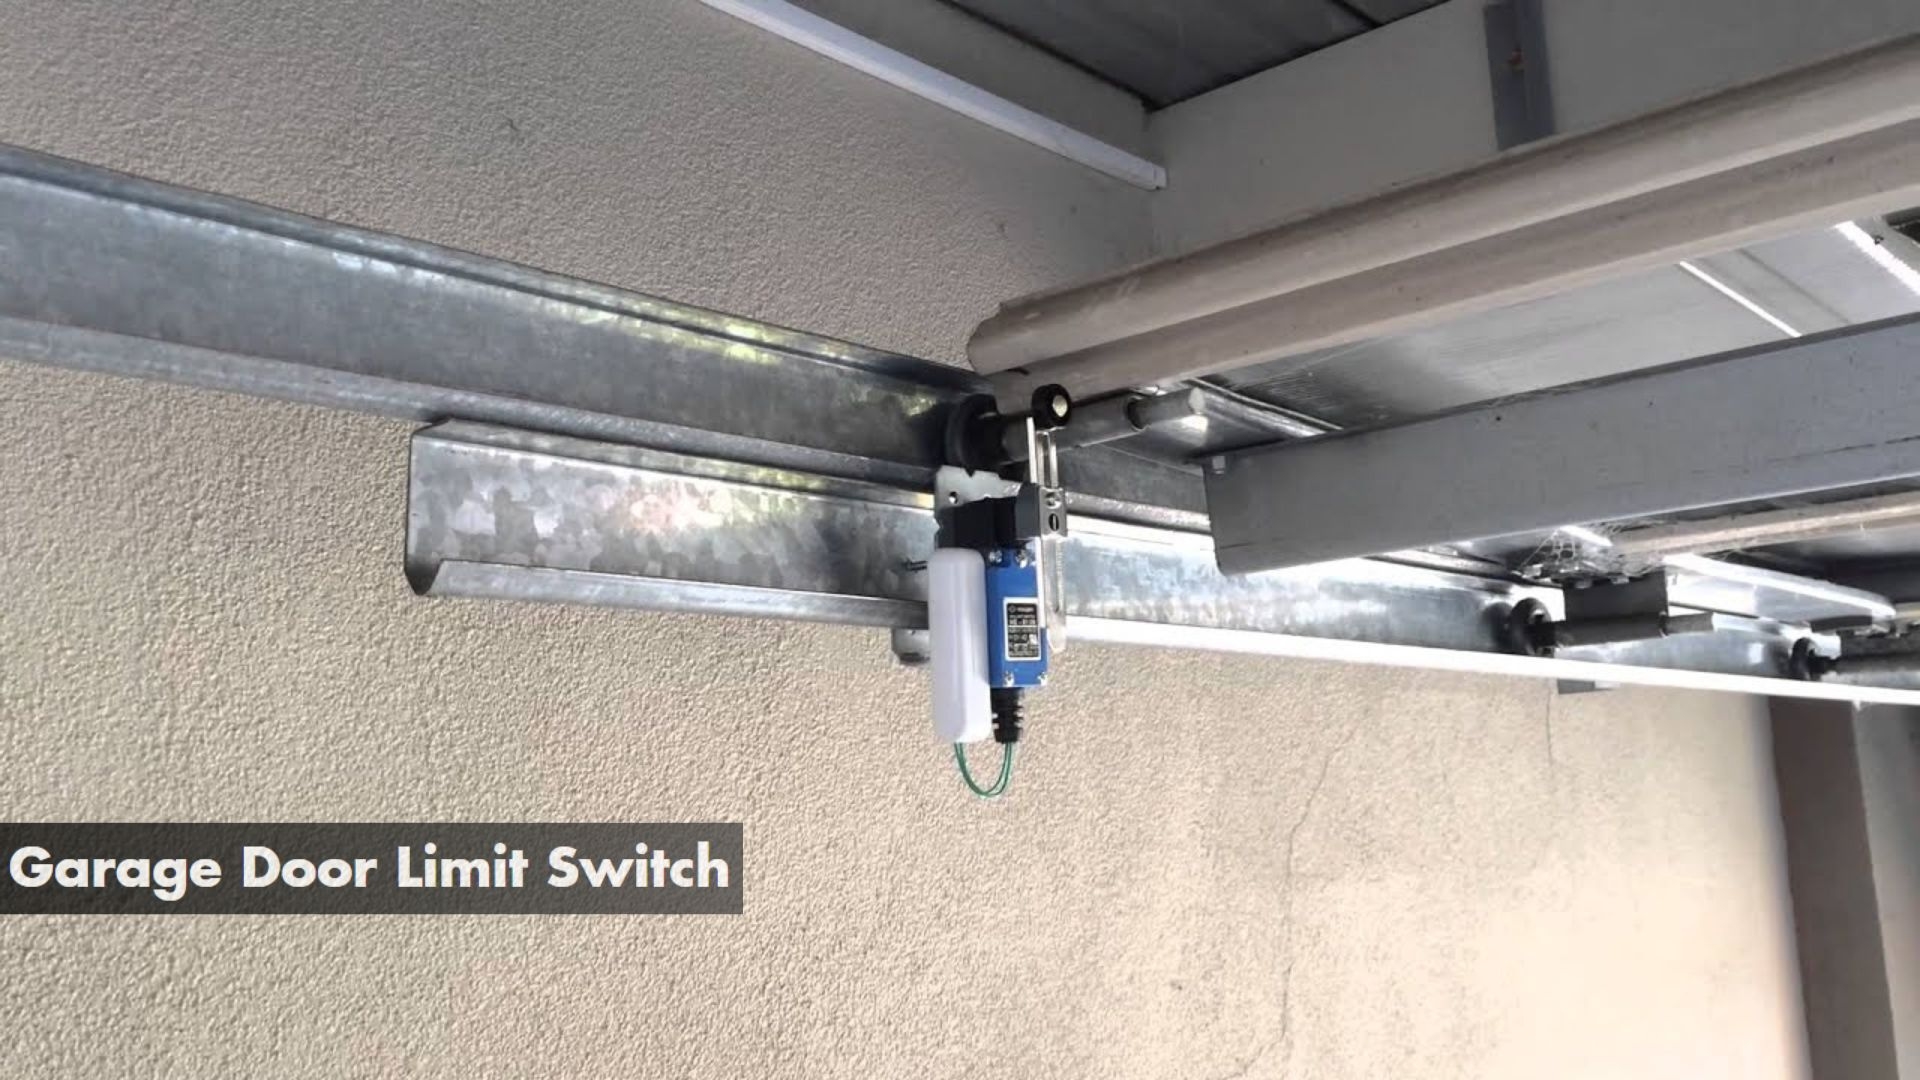 A garage door limit switch